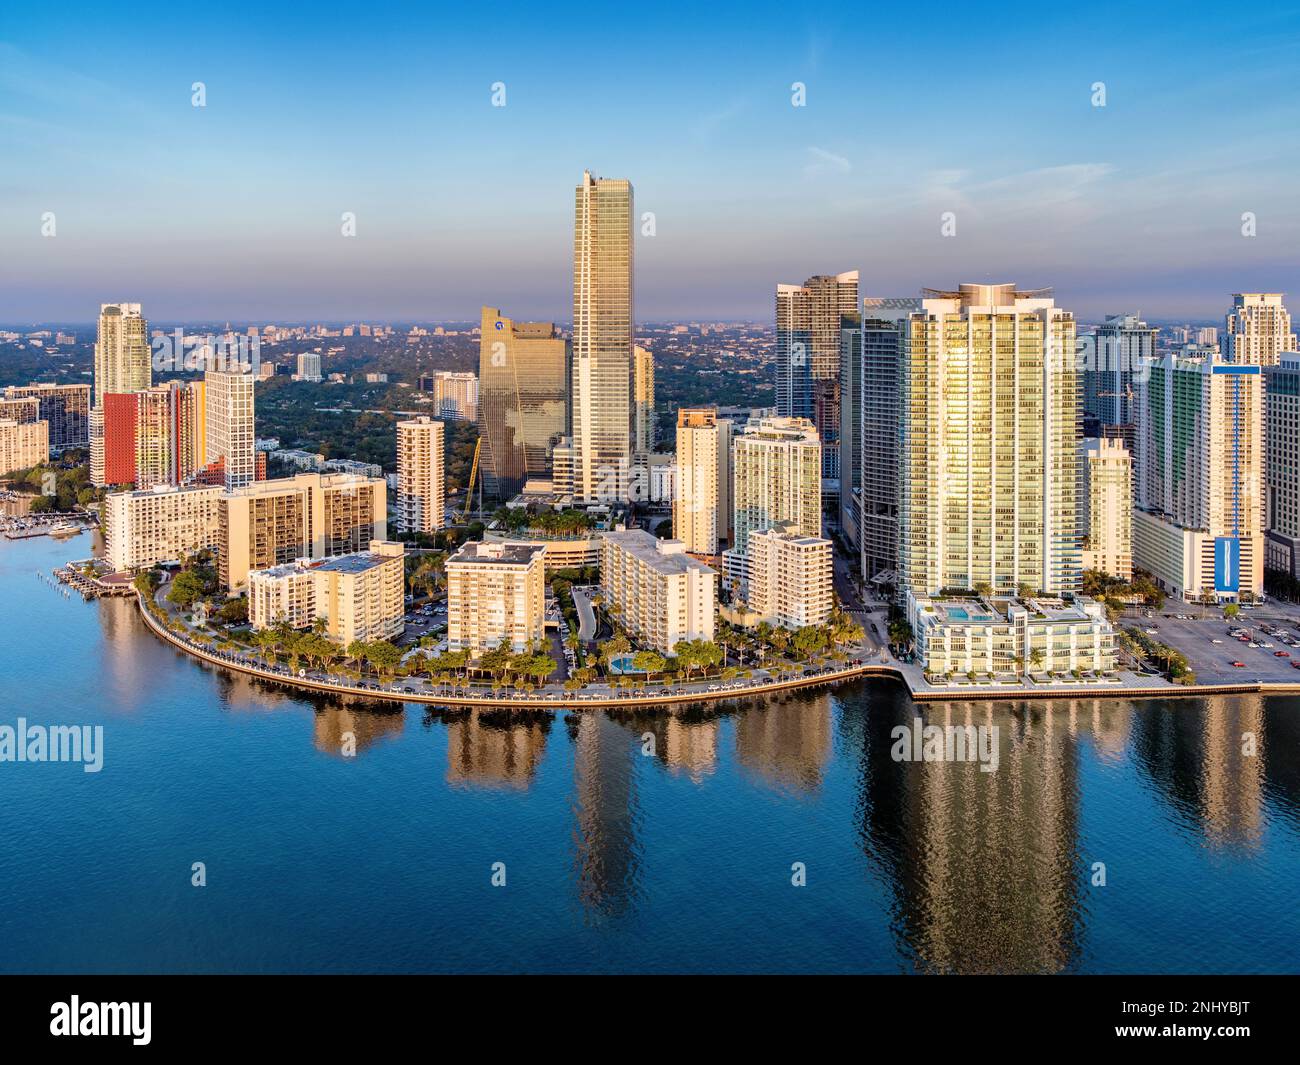 Brickell Key,Downtown Miami and Four Seasons Hotel sunrise Miami,South Florida,Dade,Florida,USA Stock Photo